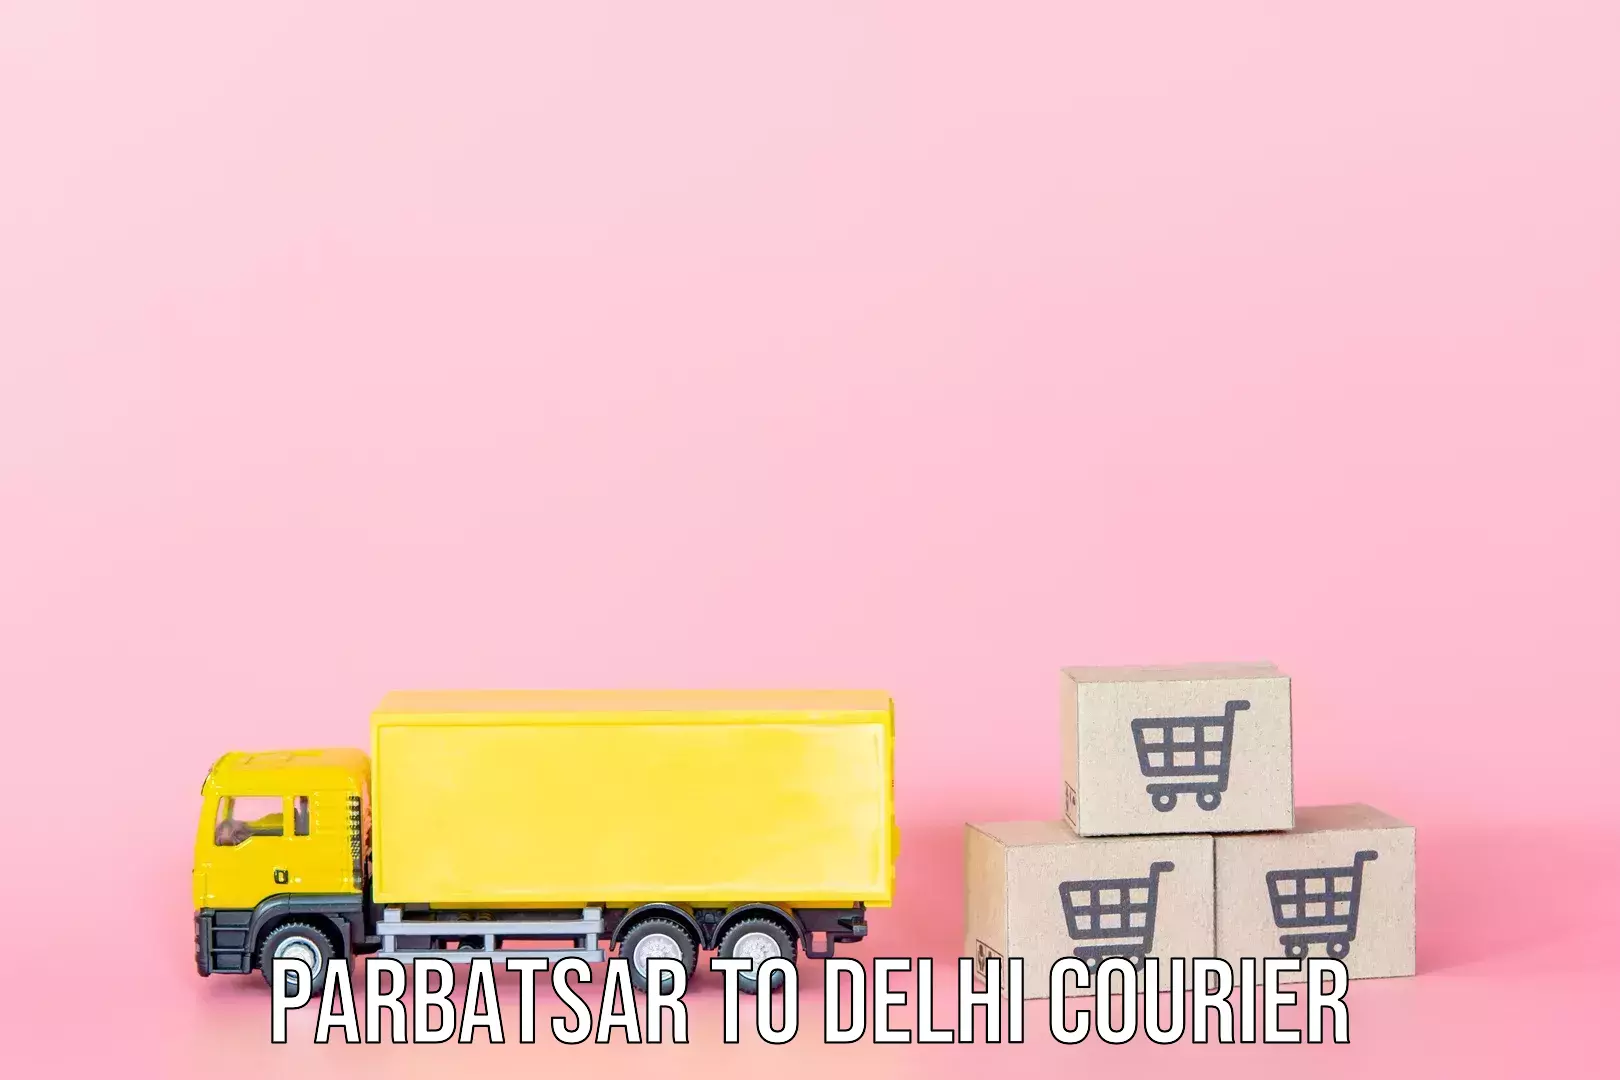 Baggage relocation service Parbatsar to Delhi